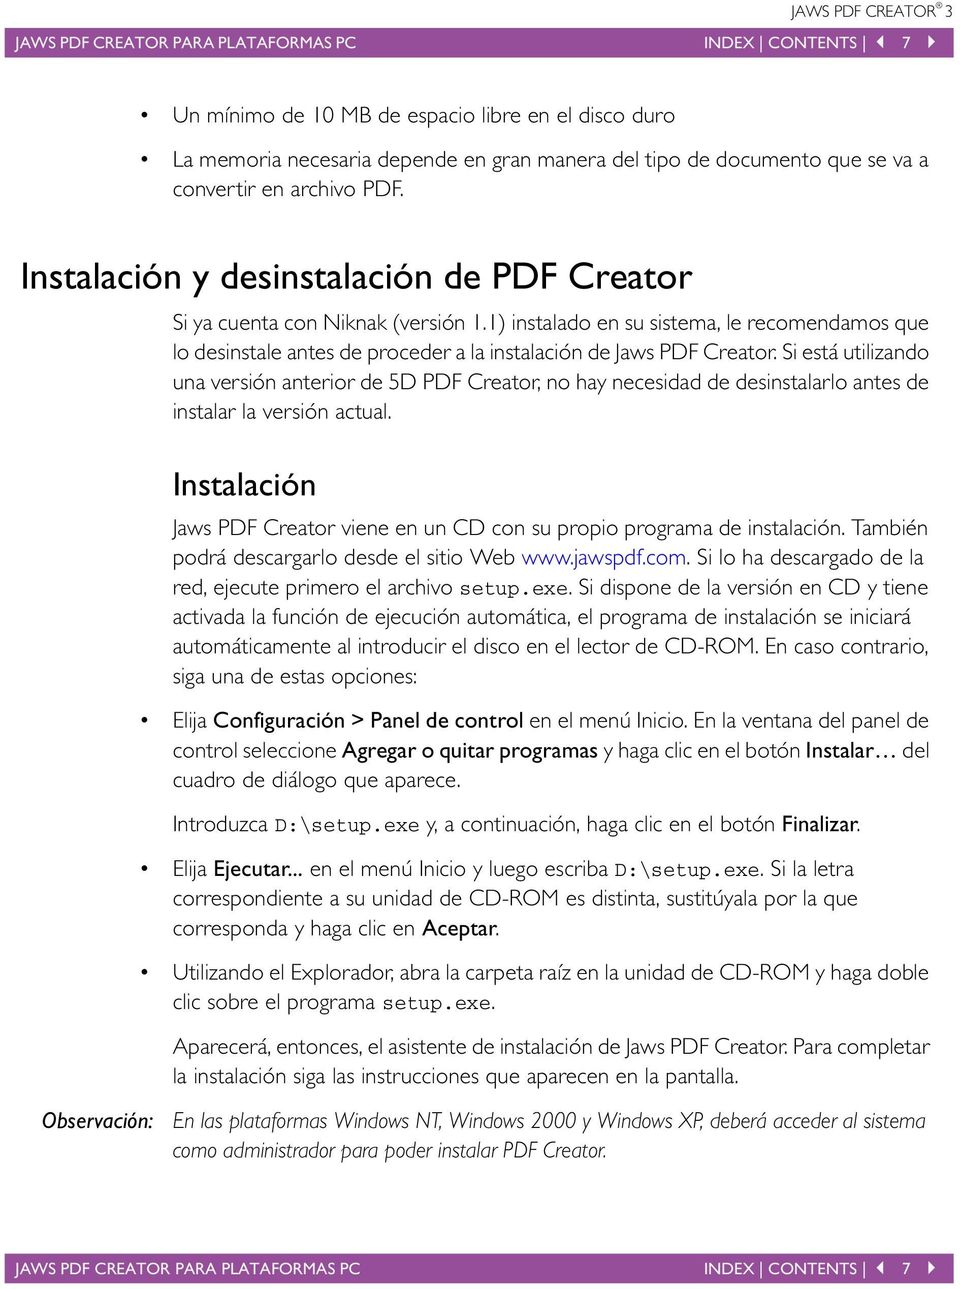 Si está utilizando una versión anterior de 5D PDF Creator, no hay necesidad de desinstalarlo antes de instalar la versión actual.